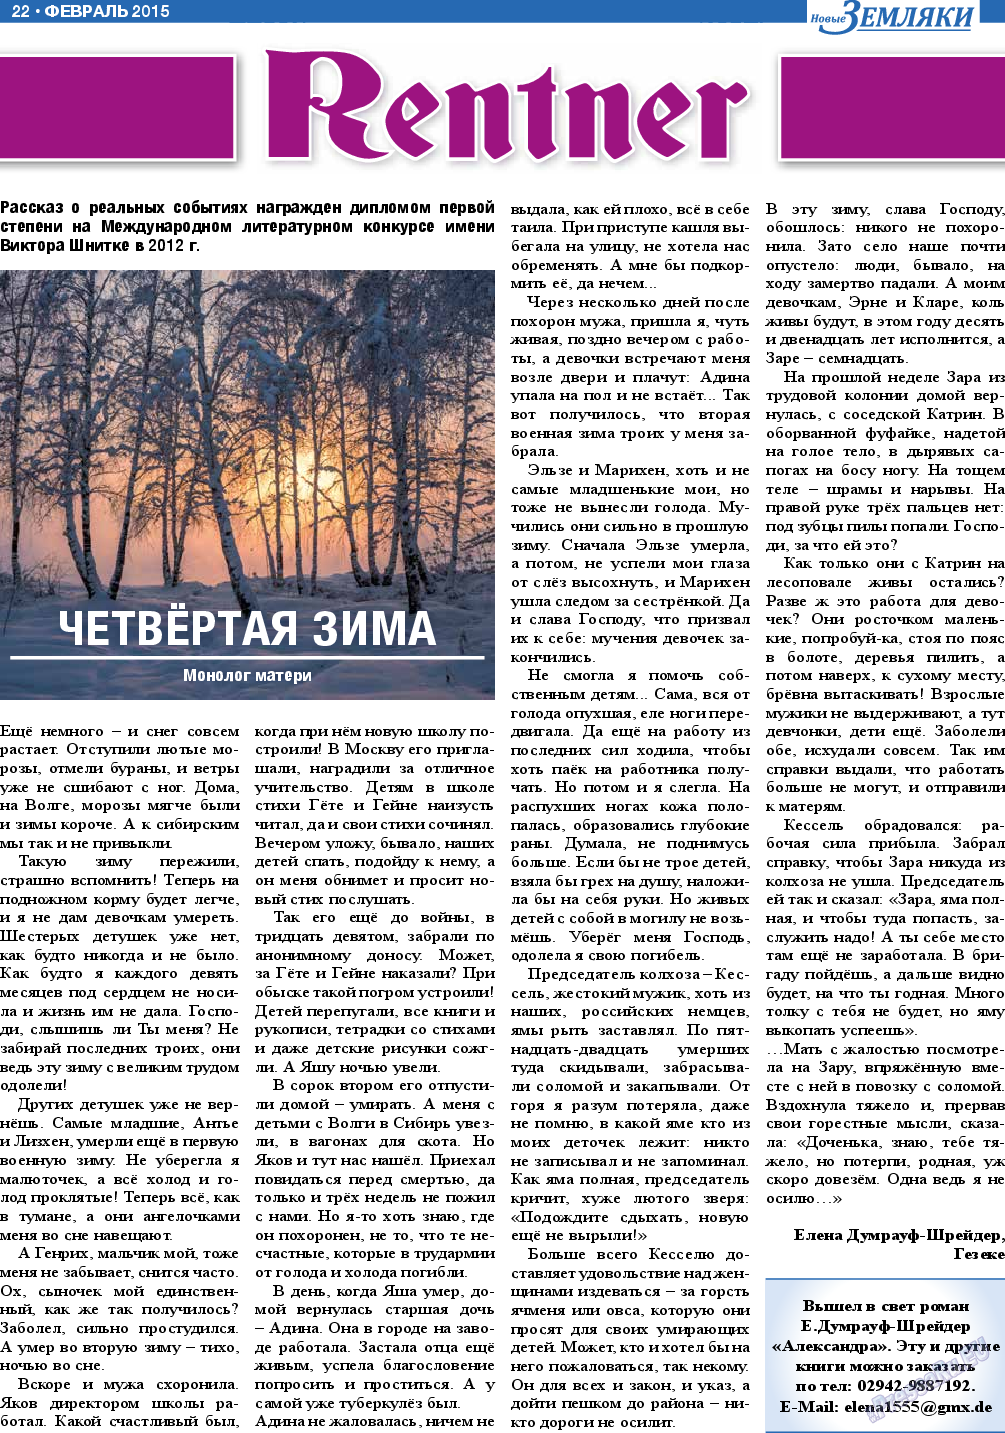 Новые Земляки, газета. 2015 №2 стр.22